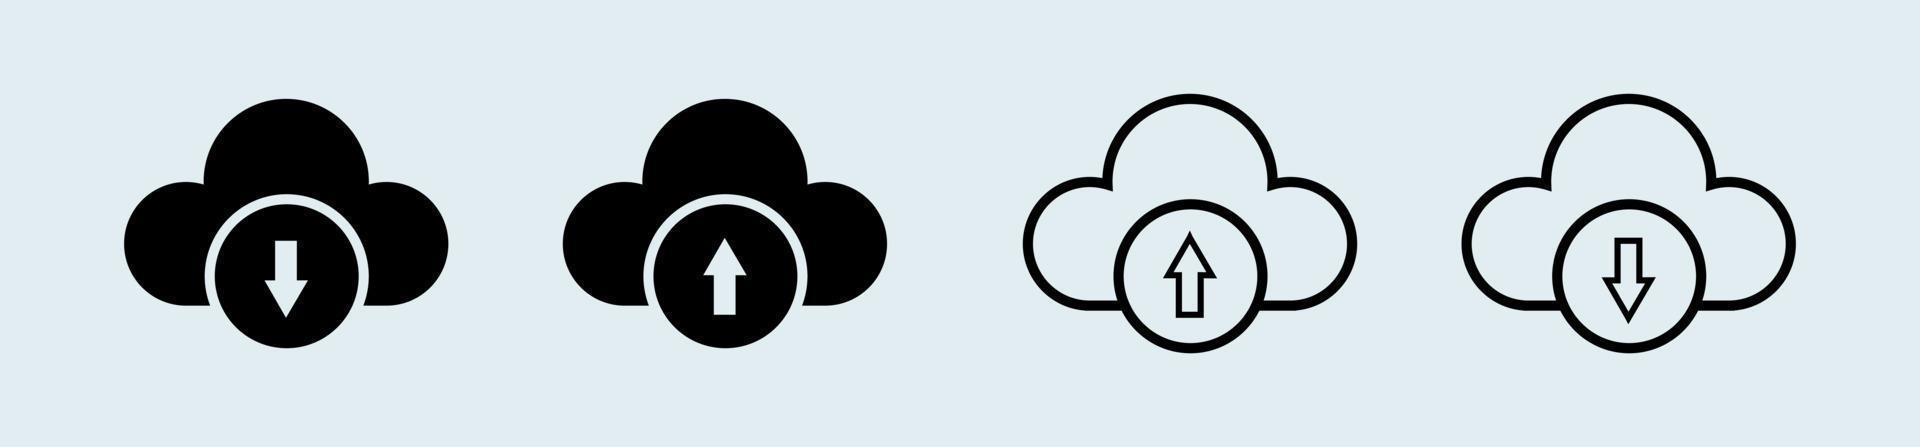 télécharger et télécharger sur l'icône cloud en couleur noire. illustration vectorielle. vecteur